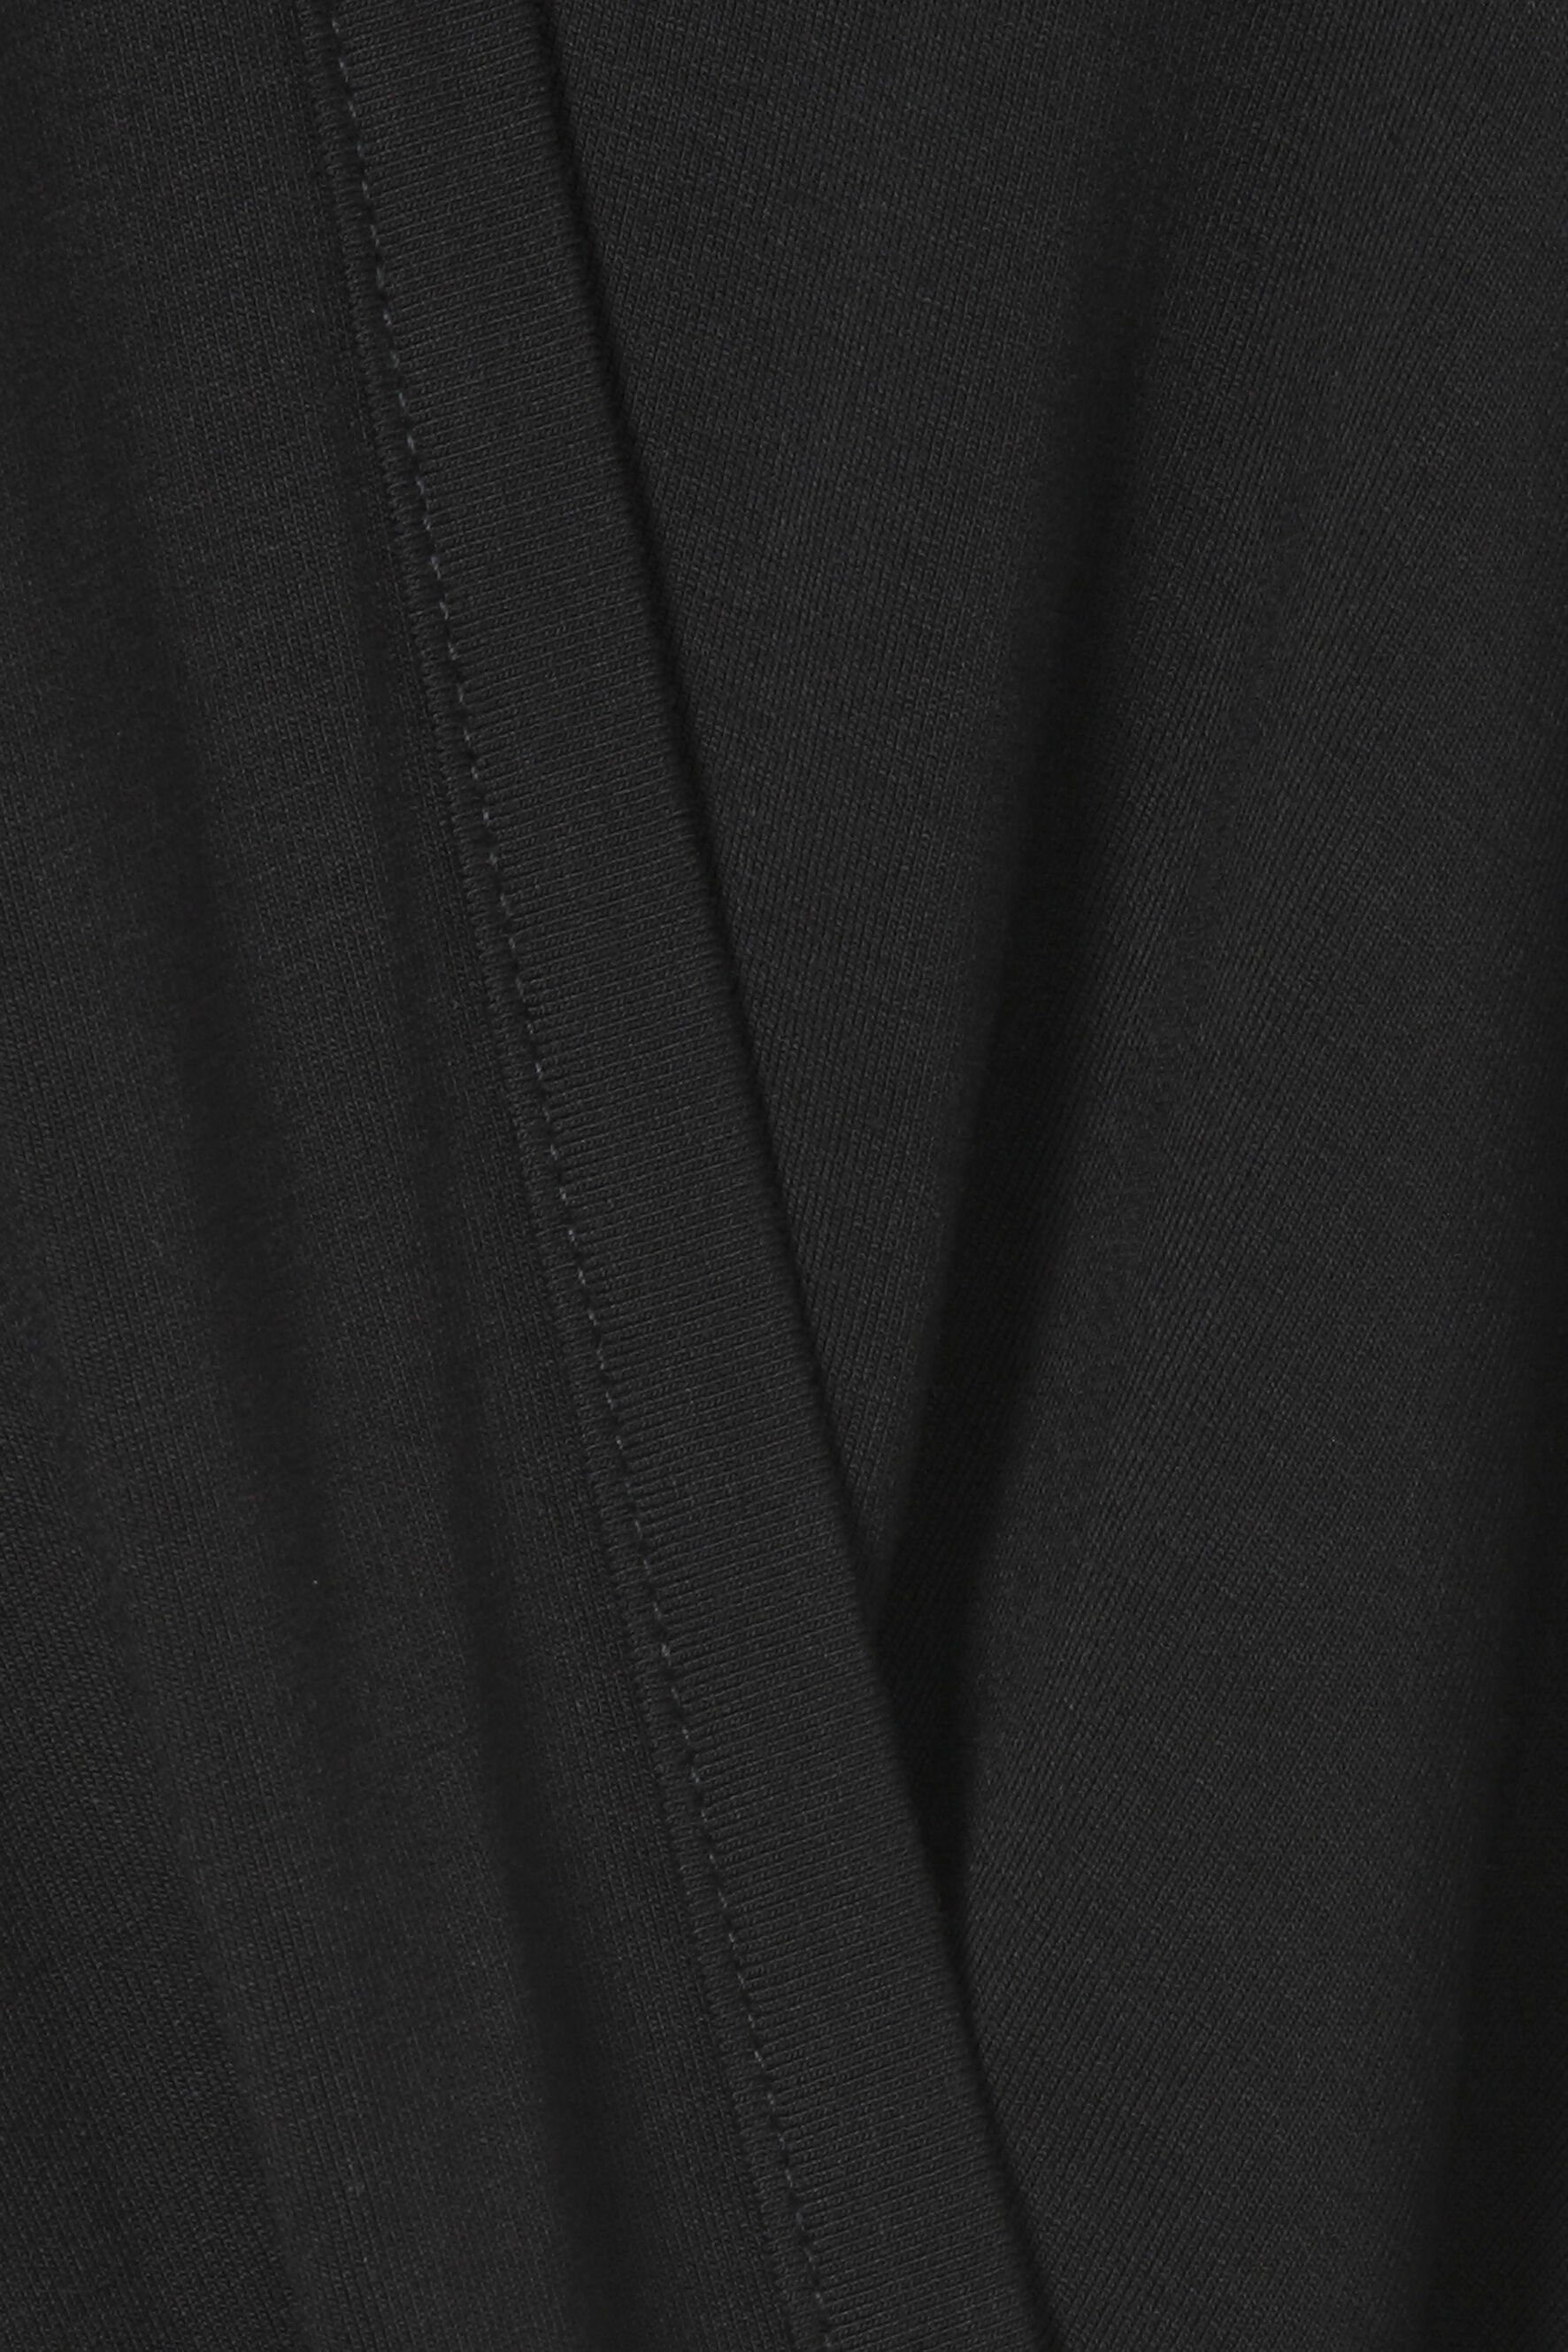 Bluse schwarz Optik APPIA VIA schlichte DUE Klassische